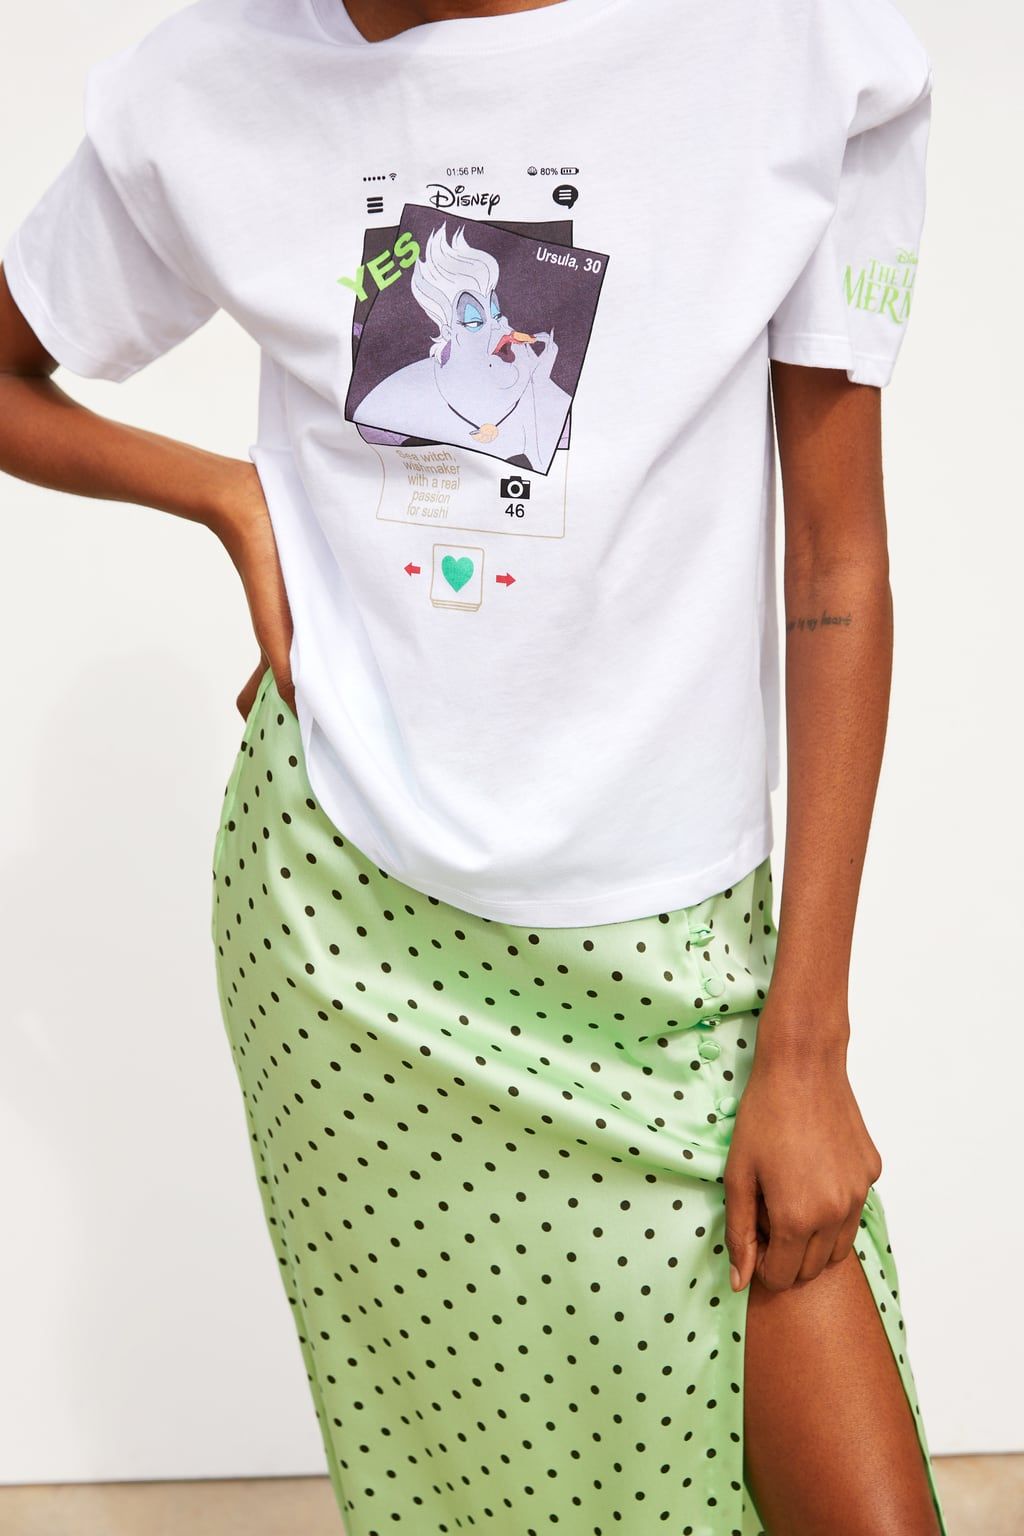 Zara vende camisetas (de 13 que enamorarán a los fans 'La Sirenita' - Alerta fans de 'La Sirenita': Zara vende dos (por 13 euros) que os enamorarán